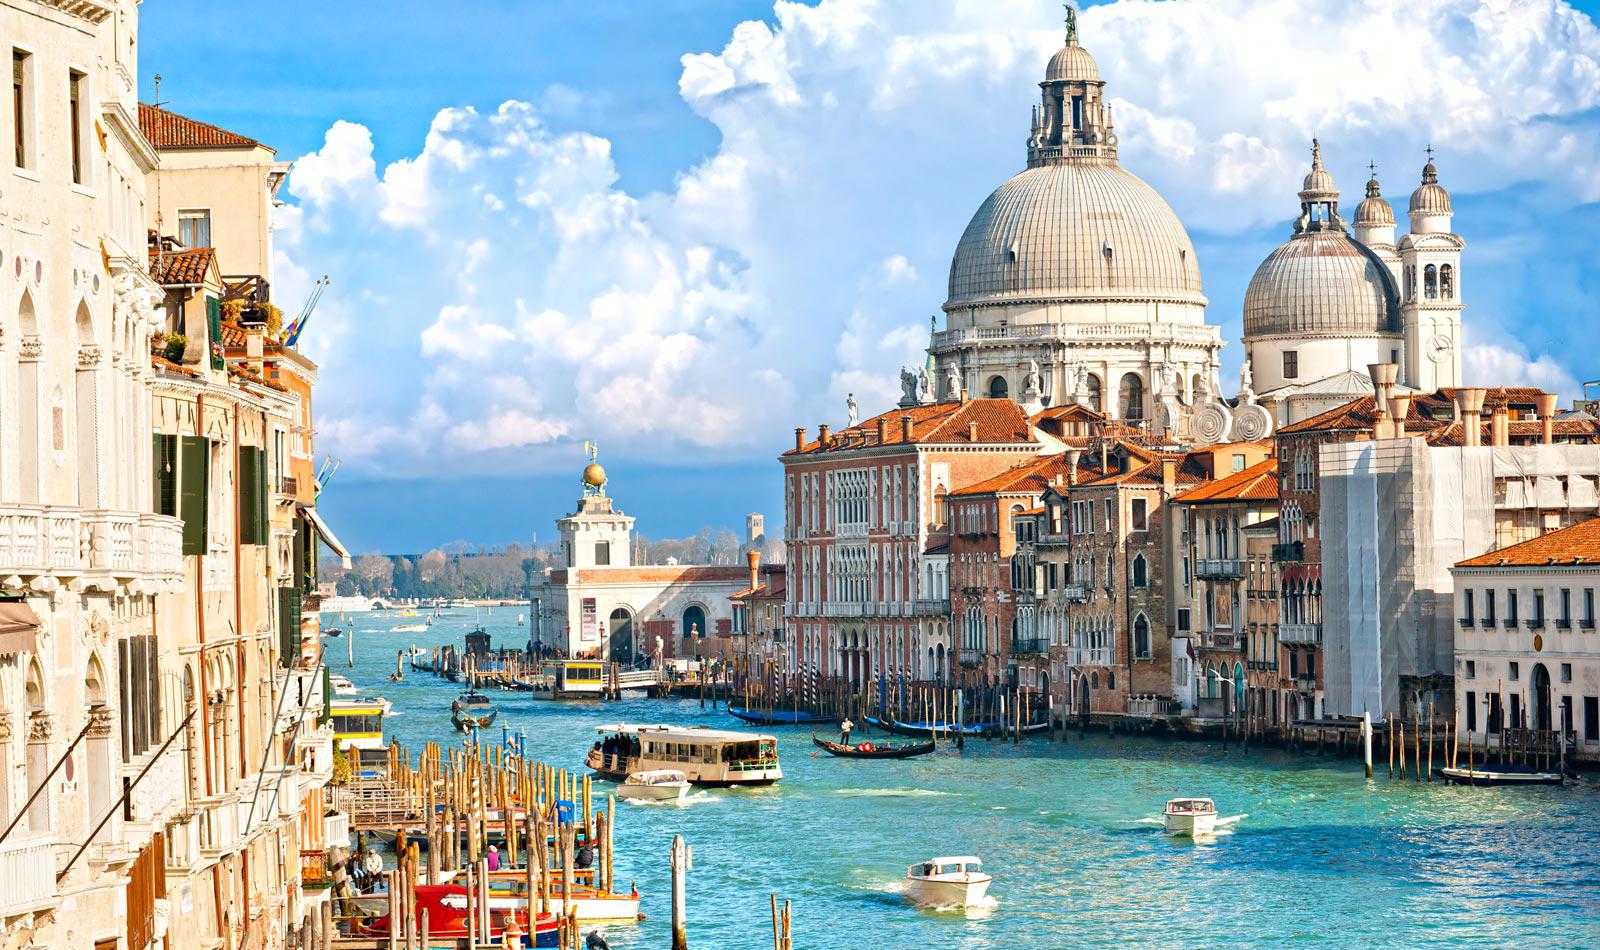 威尼斯曾经是威尼斯共和国的中心,被称作"亚得里亚海明珠".